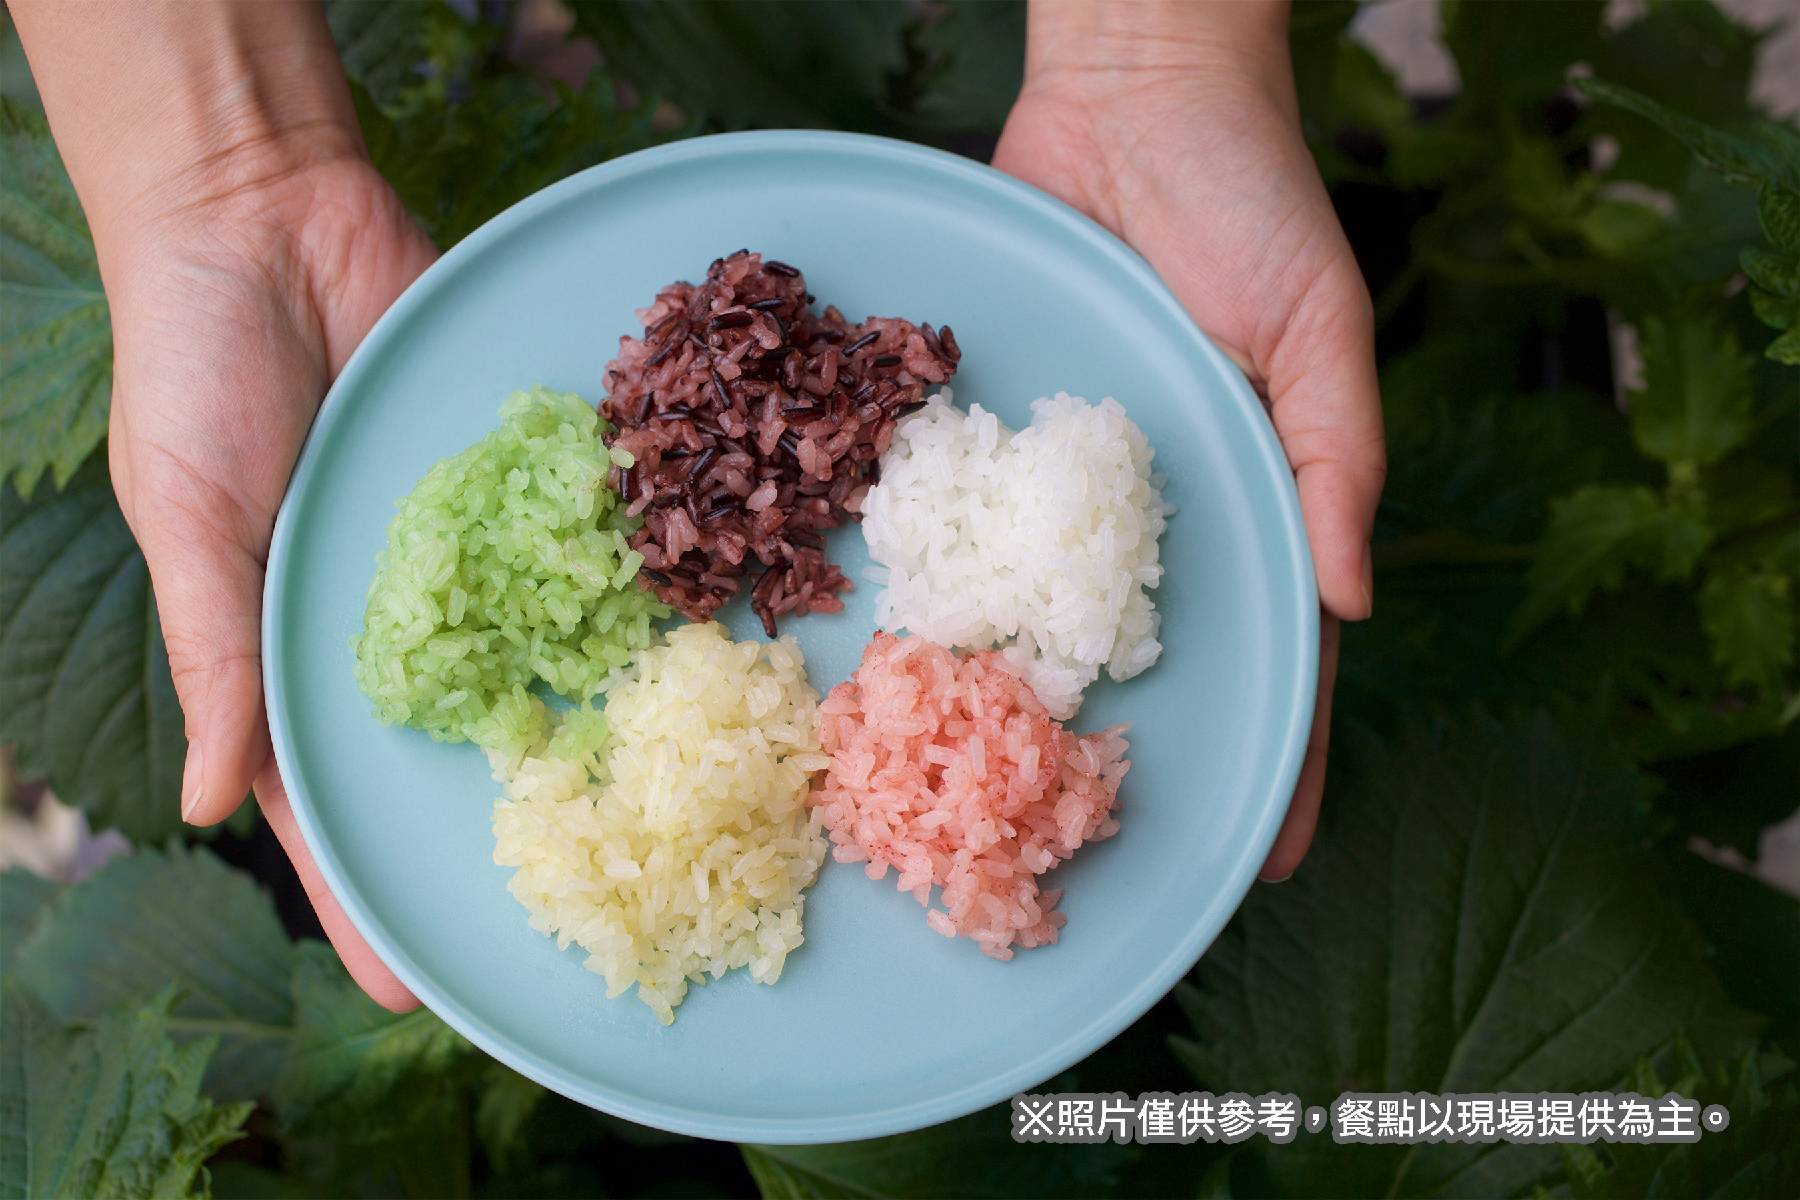 宜蘭冬山良食農創園區-彩色米飯糰DIY體驗券(最少4人成行)5